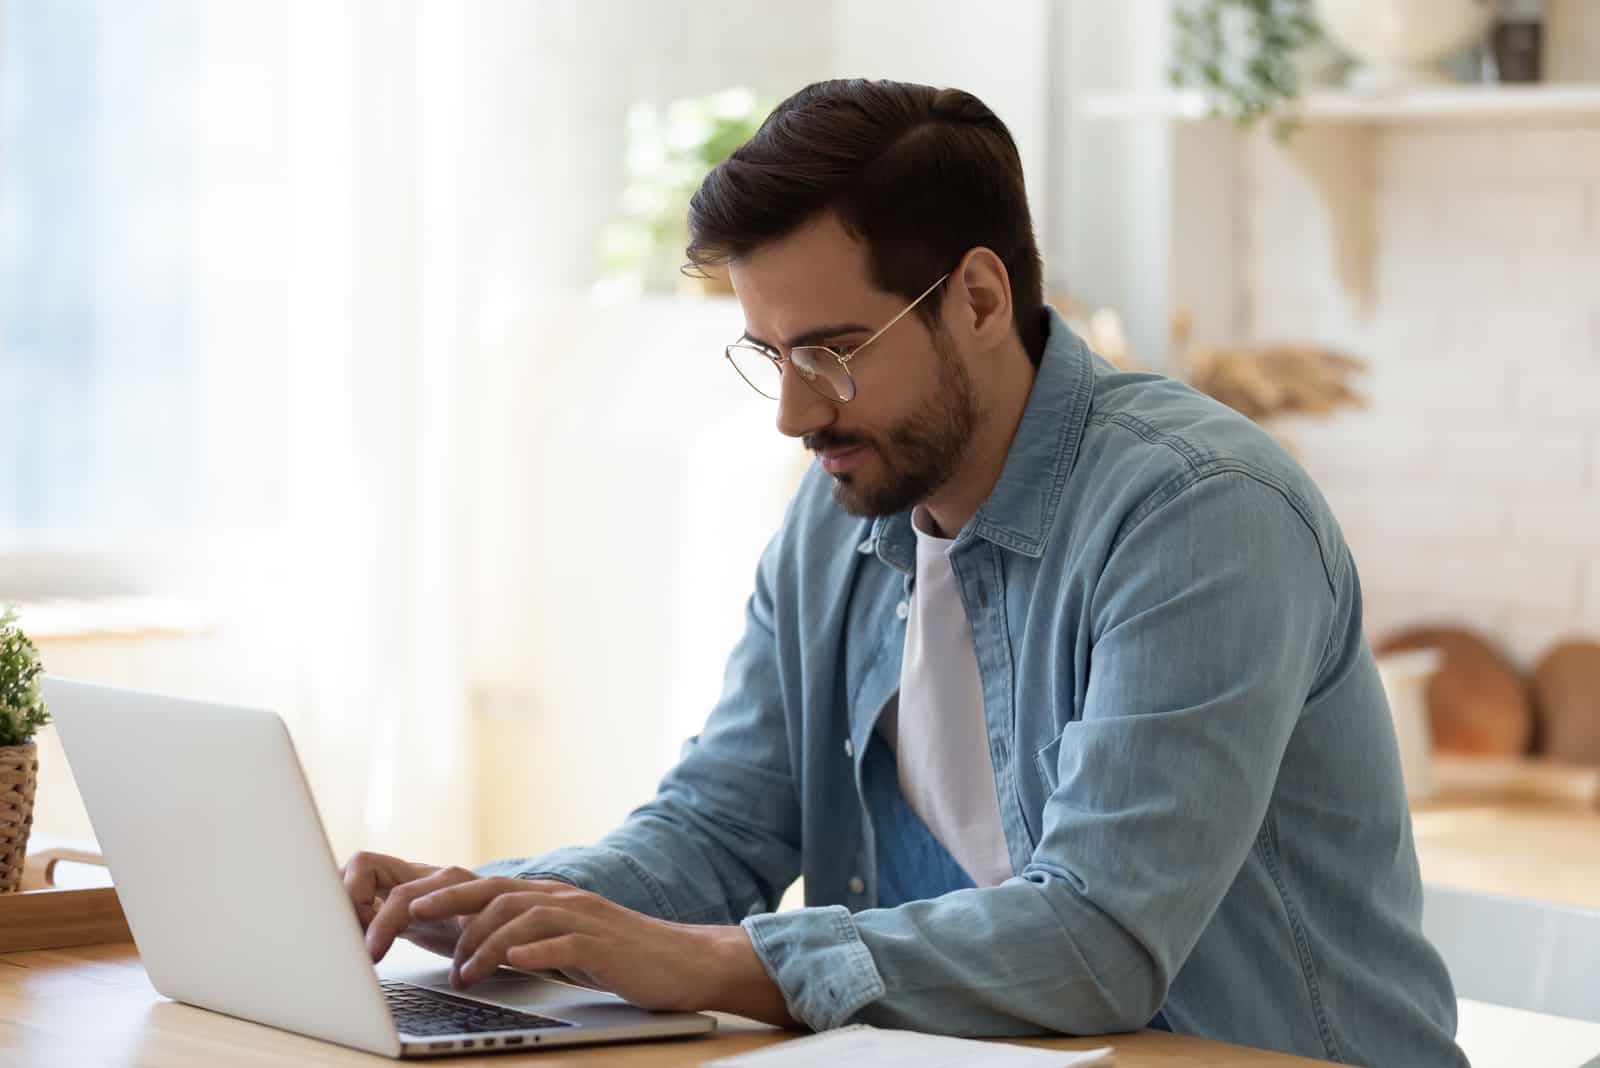 un homme est assis derrière un ordinateur portable et une clé